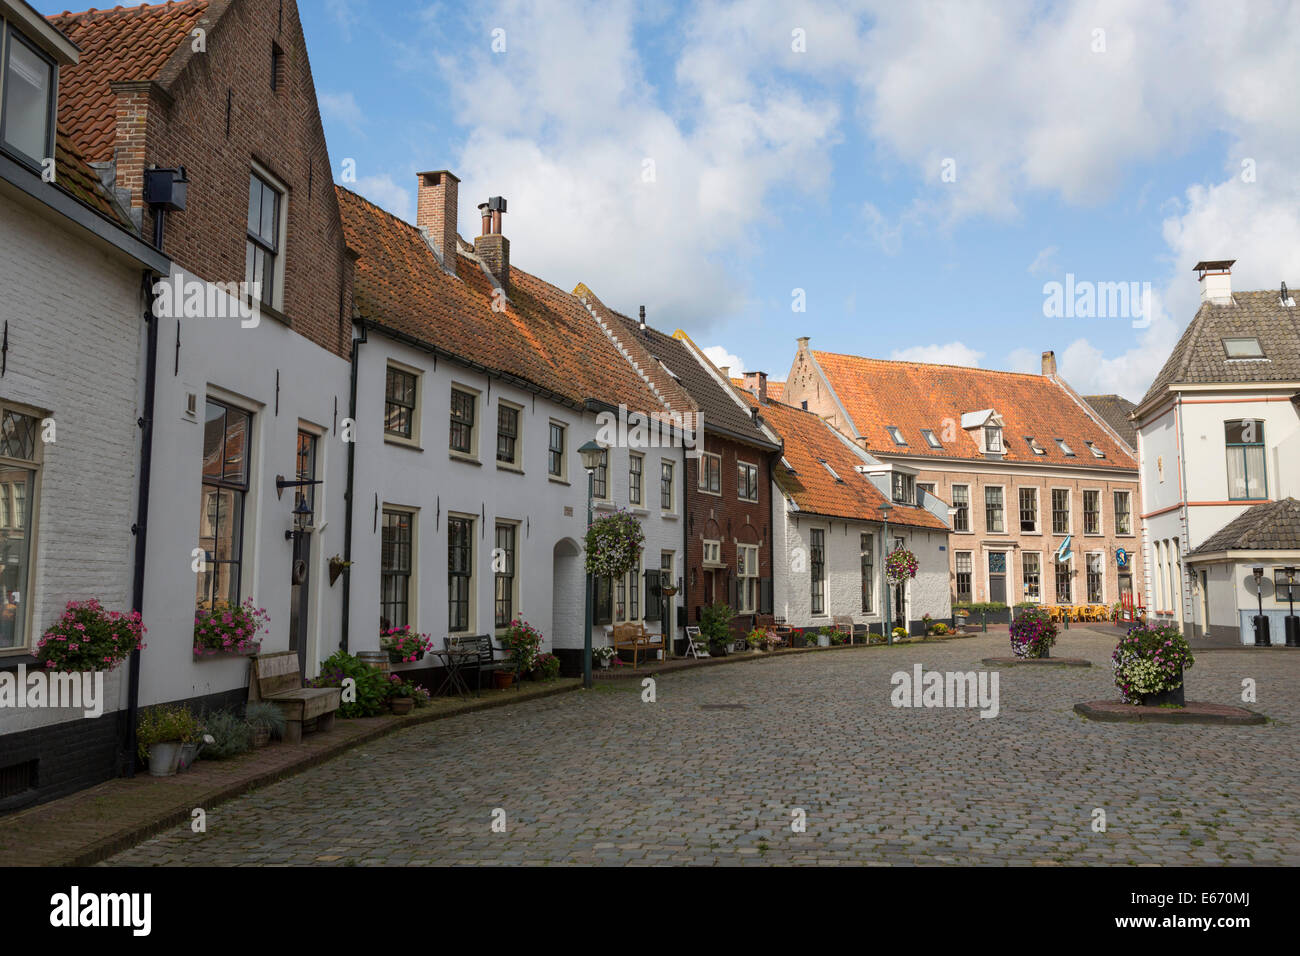 Nostaligic storica strada con case bianche presso la città anseatica di Hattem nei Paesi Bassi Foto Stock